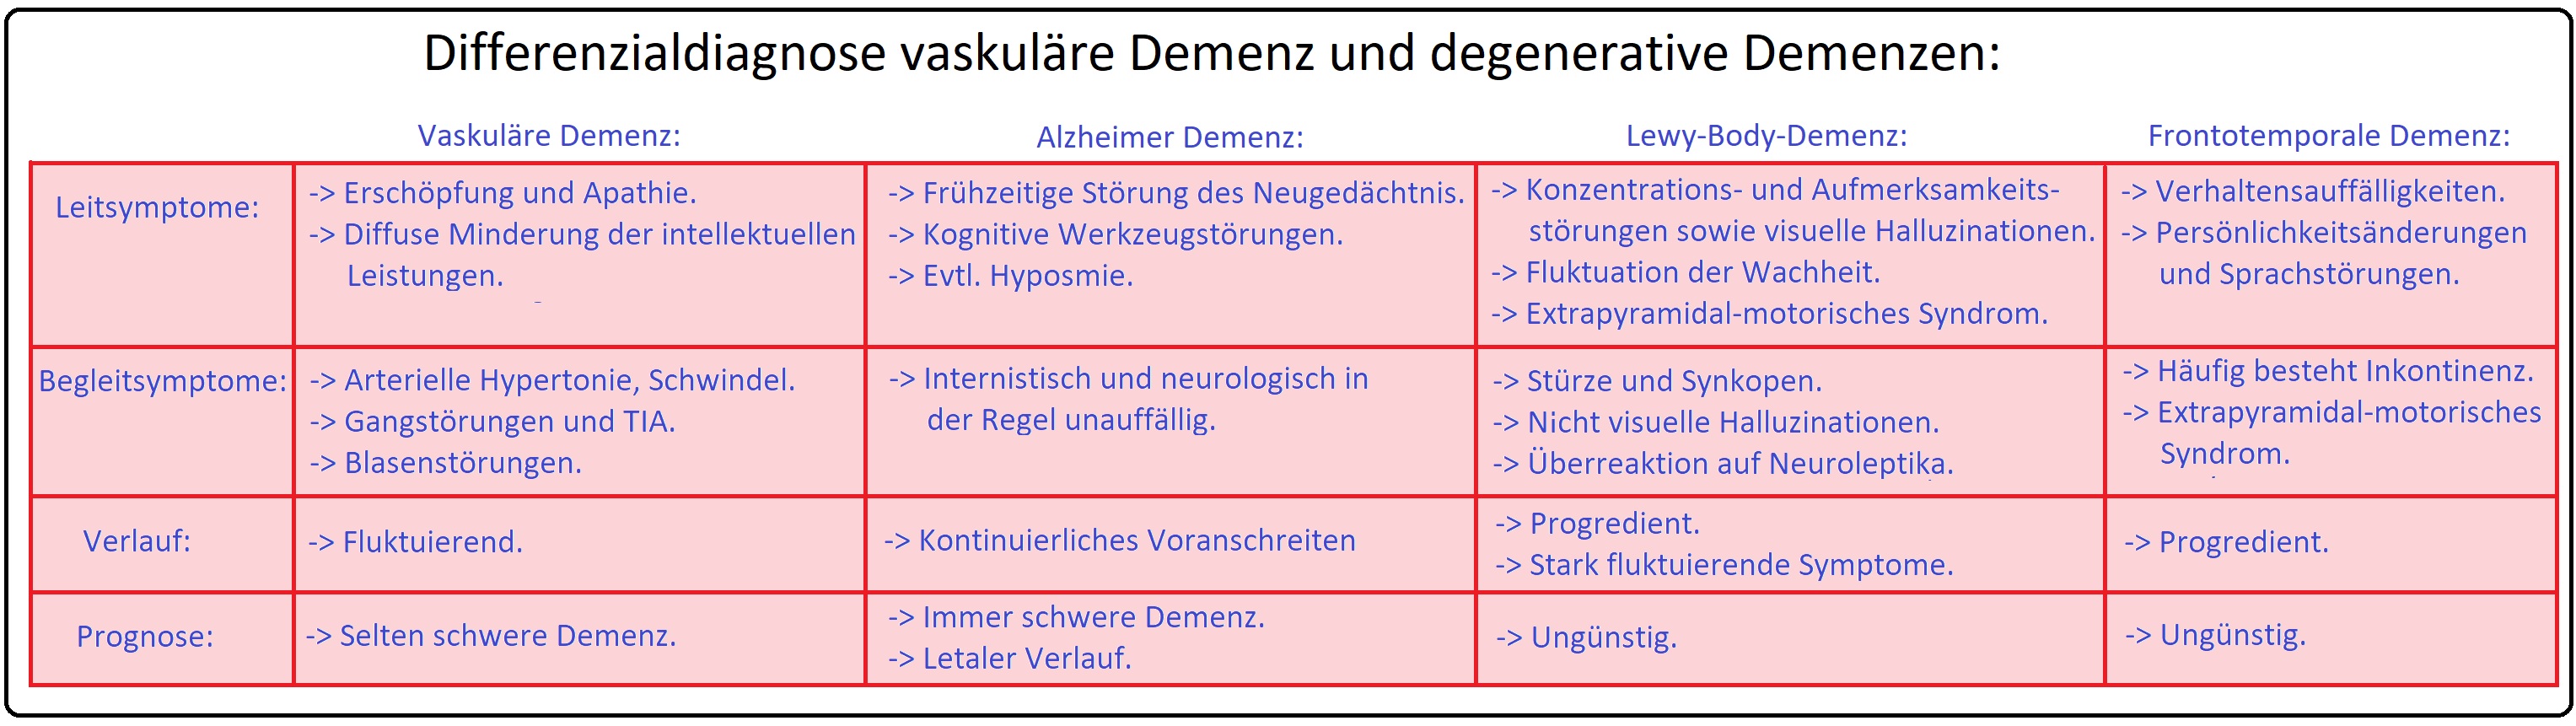 492 Differenzialdiagnose vaskuläre Demenz und degenerative Demenzen